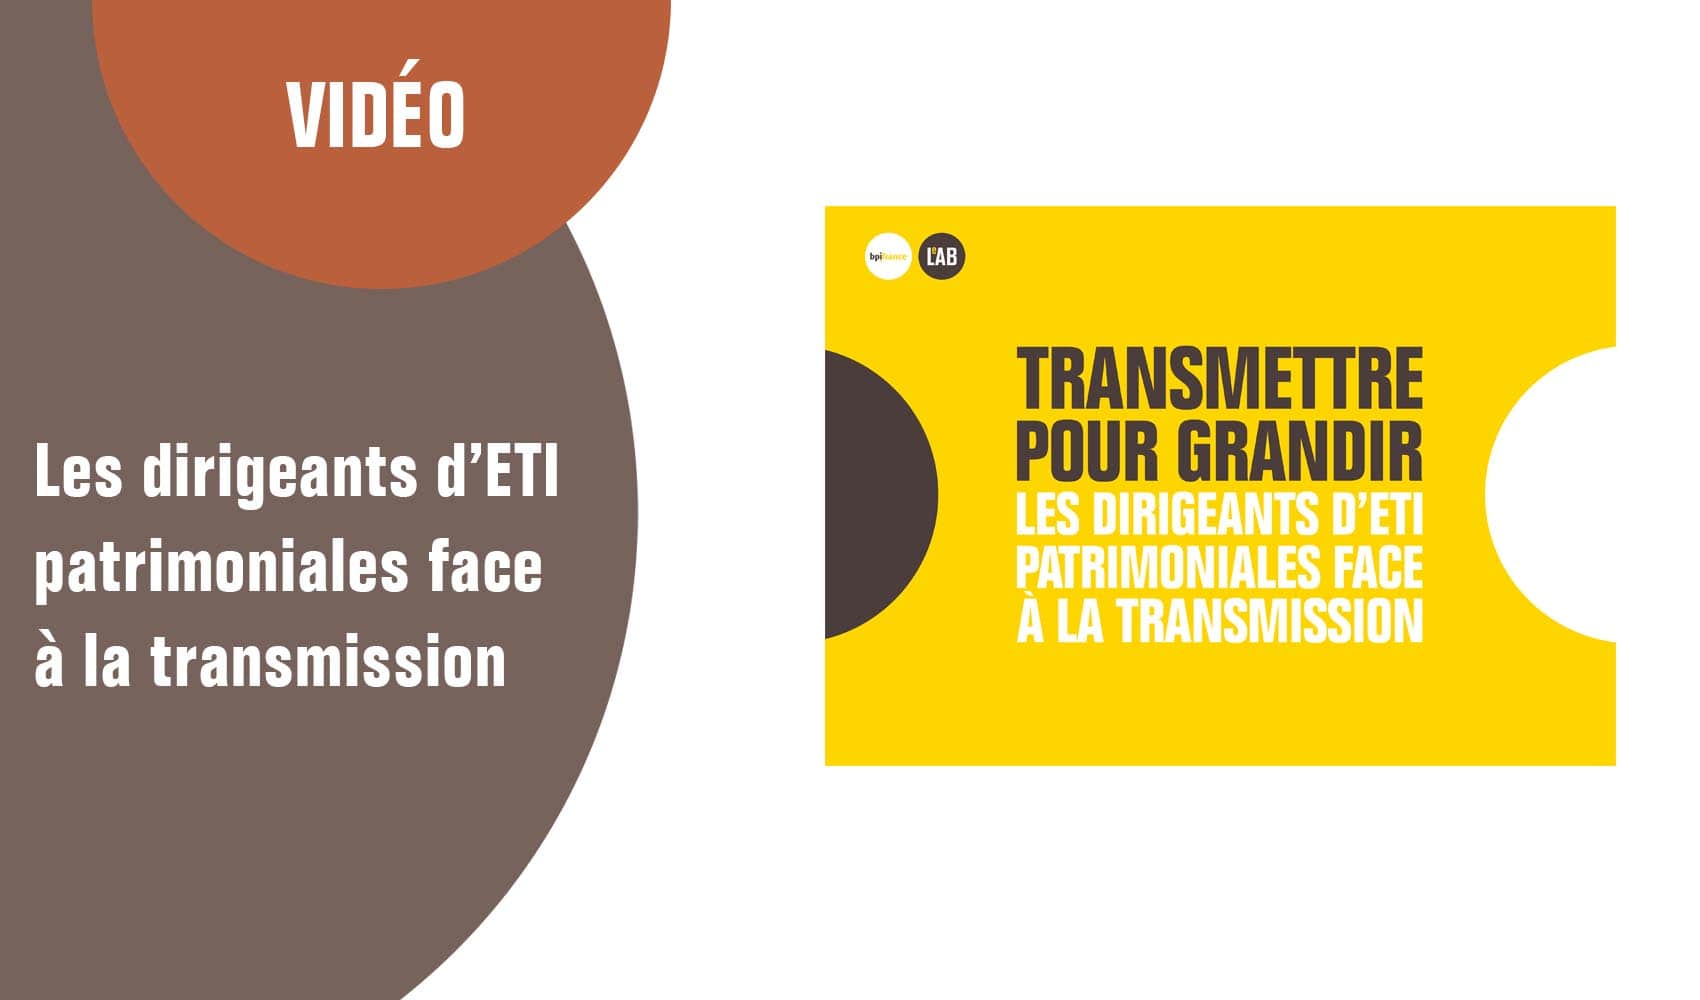 Les dirigeants d’ETI patrimoniales face à la transmission : le résumé de l'étude en vidéo